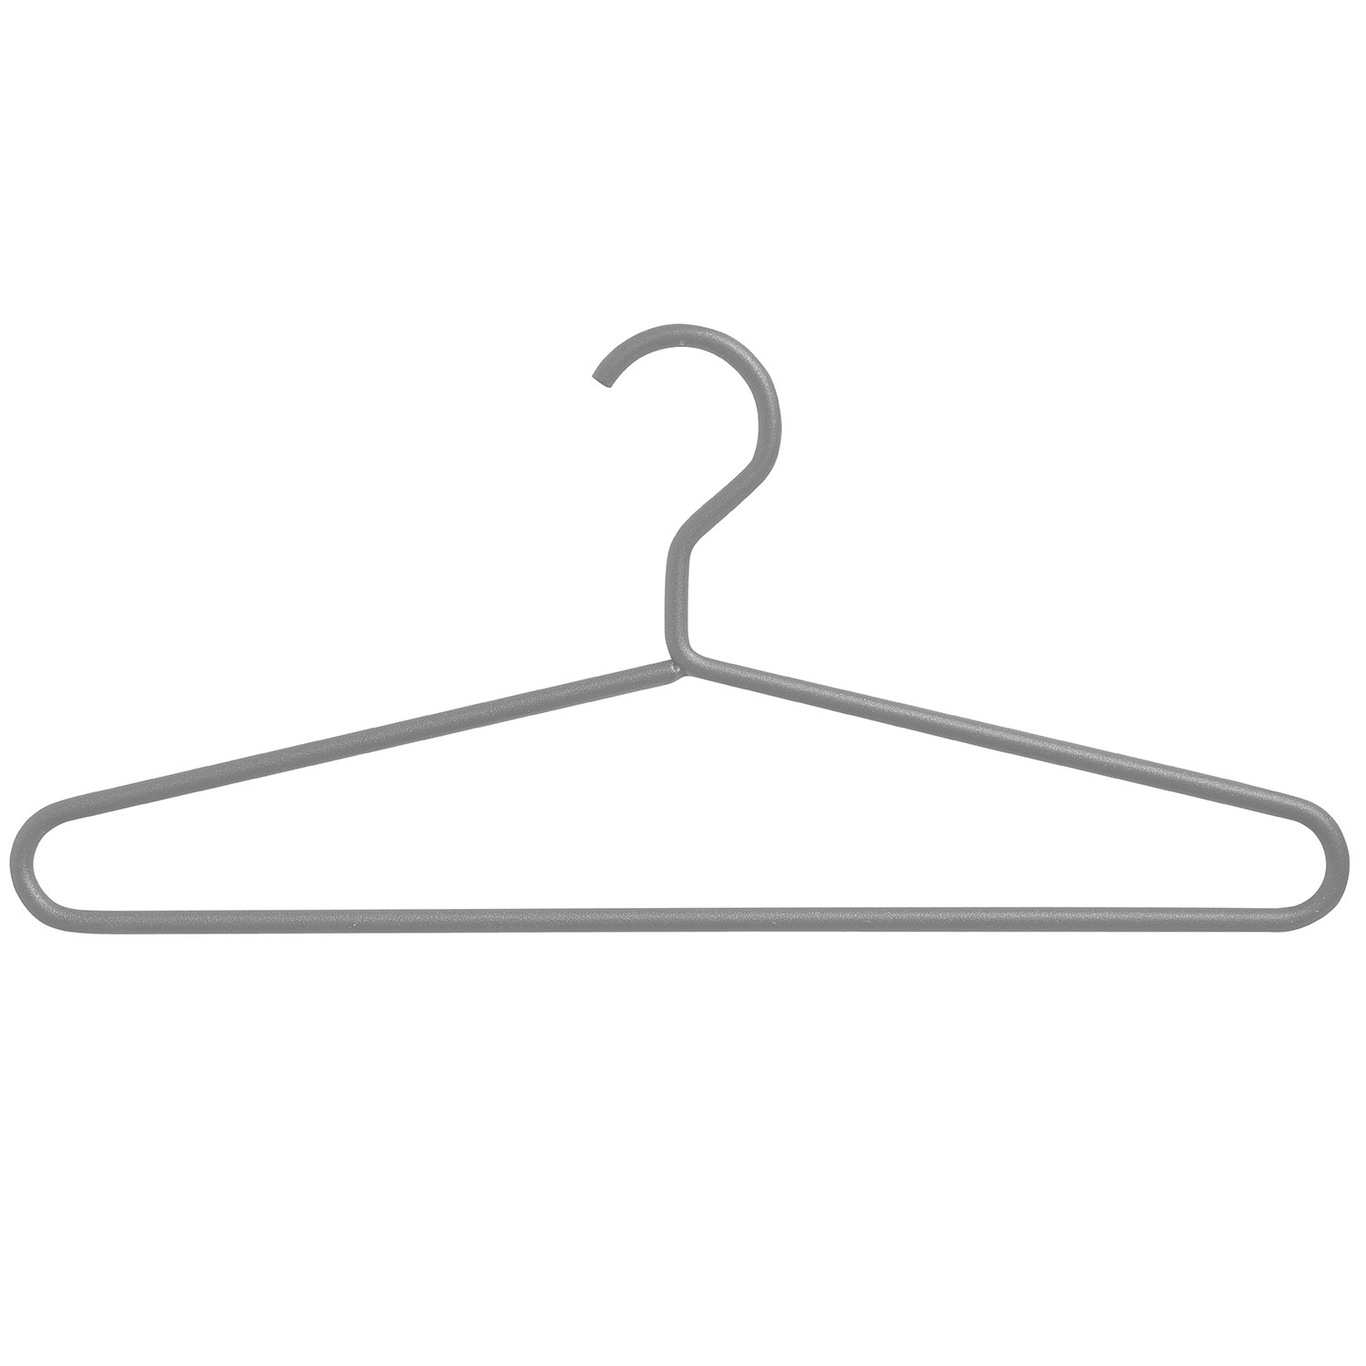 https://royaldesign.com/image/2/smd-design-alfred-hanger-4-pack-3?w=800&quality=80